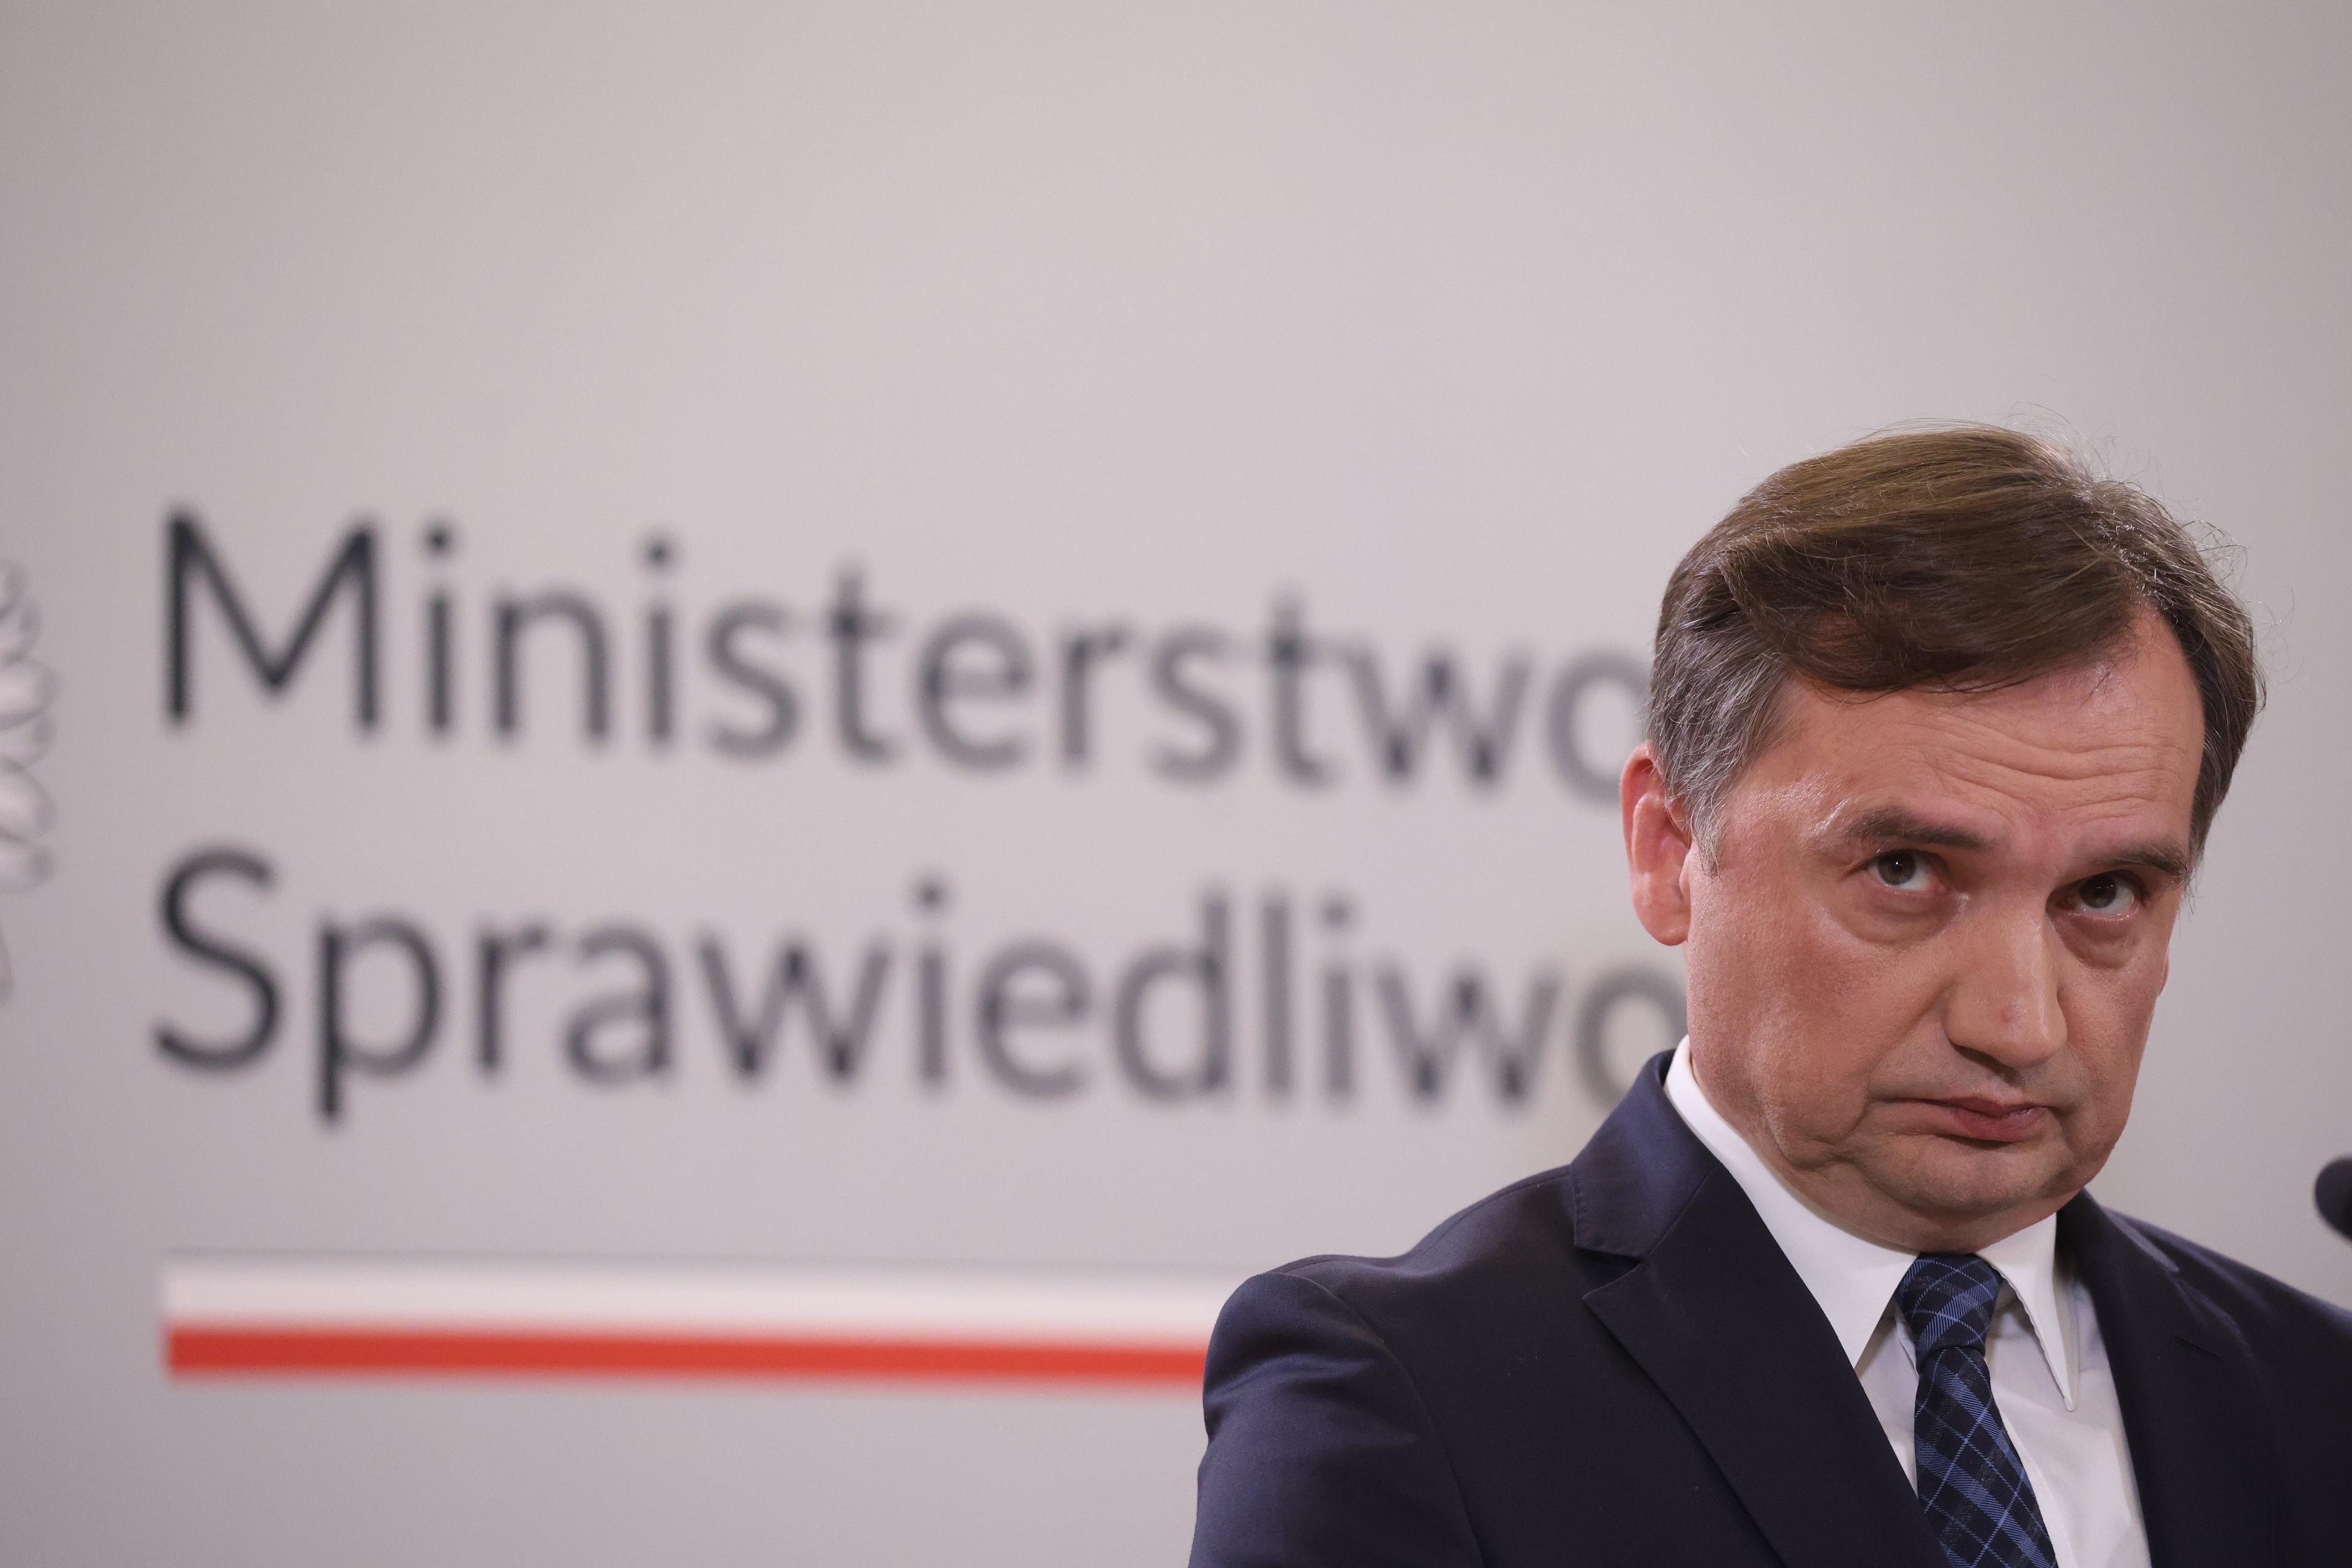 Na zdjęciu: Minister sprawiedliwości Zbigniew Ziobro, szef Suwerennej Polski